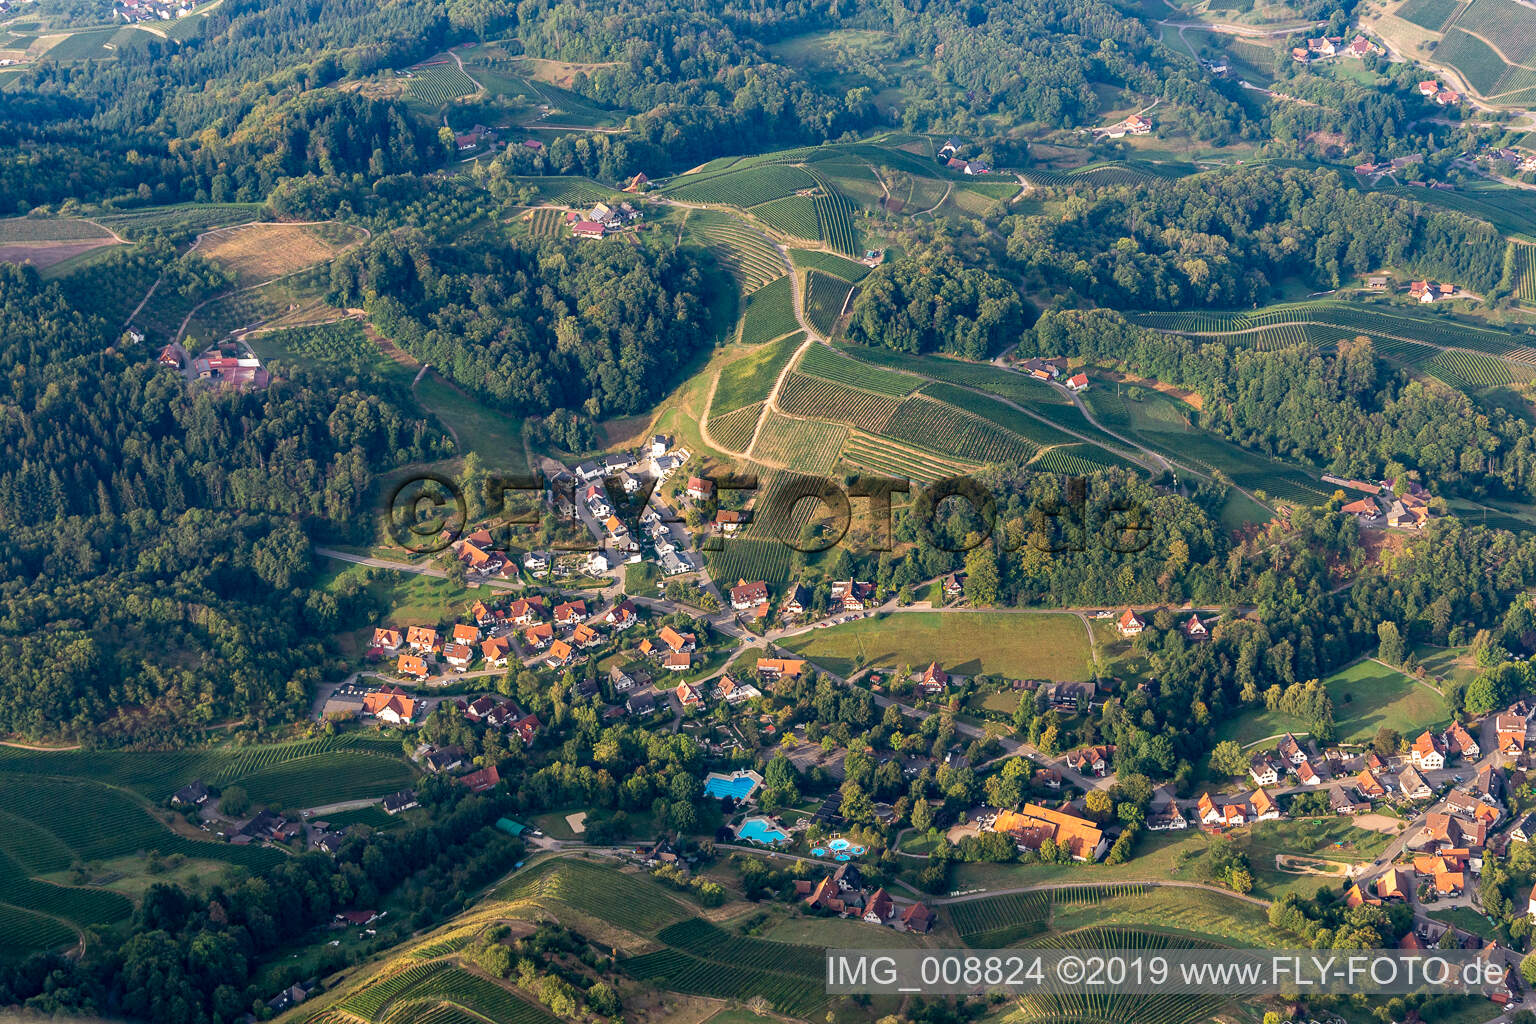 Vue aérienne de Piscine d'aventure en plein air à Sasbachwalden dans le département Bade-Wurtemberg, Allemagne